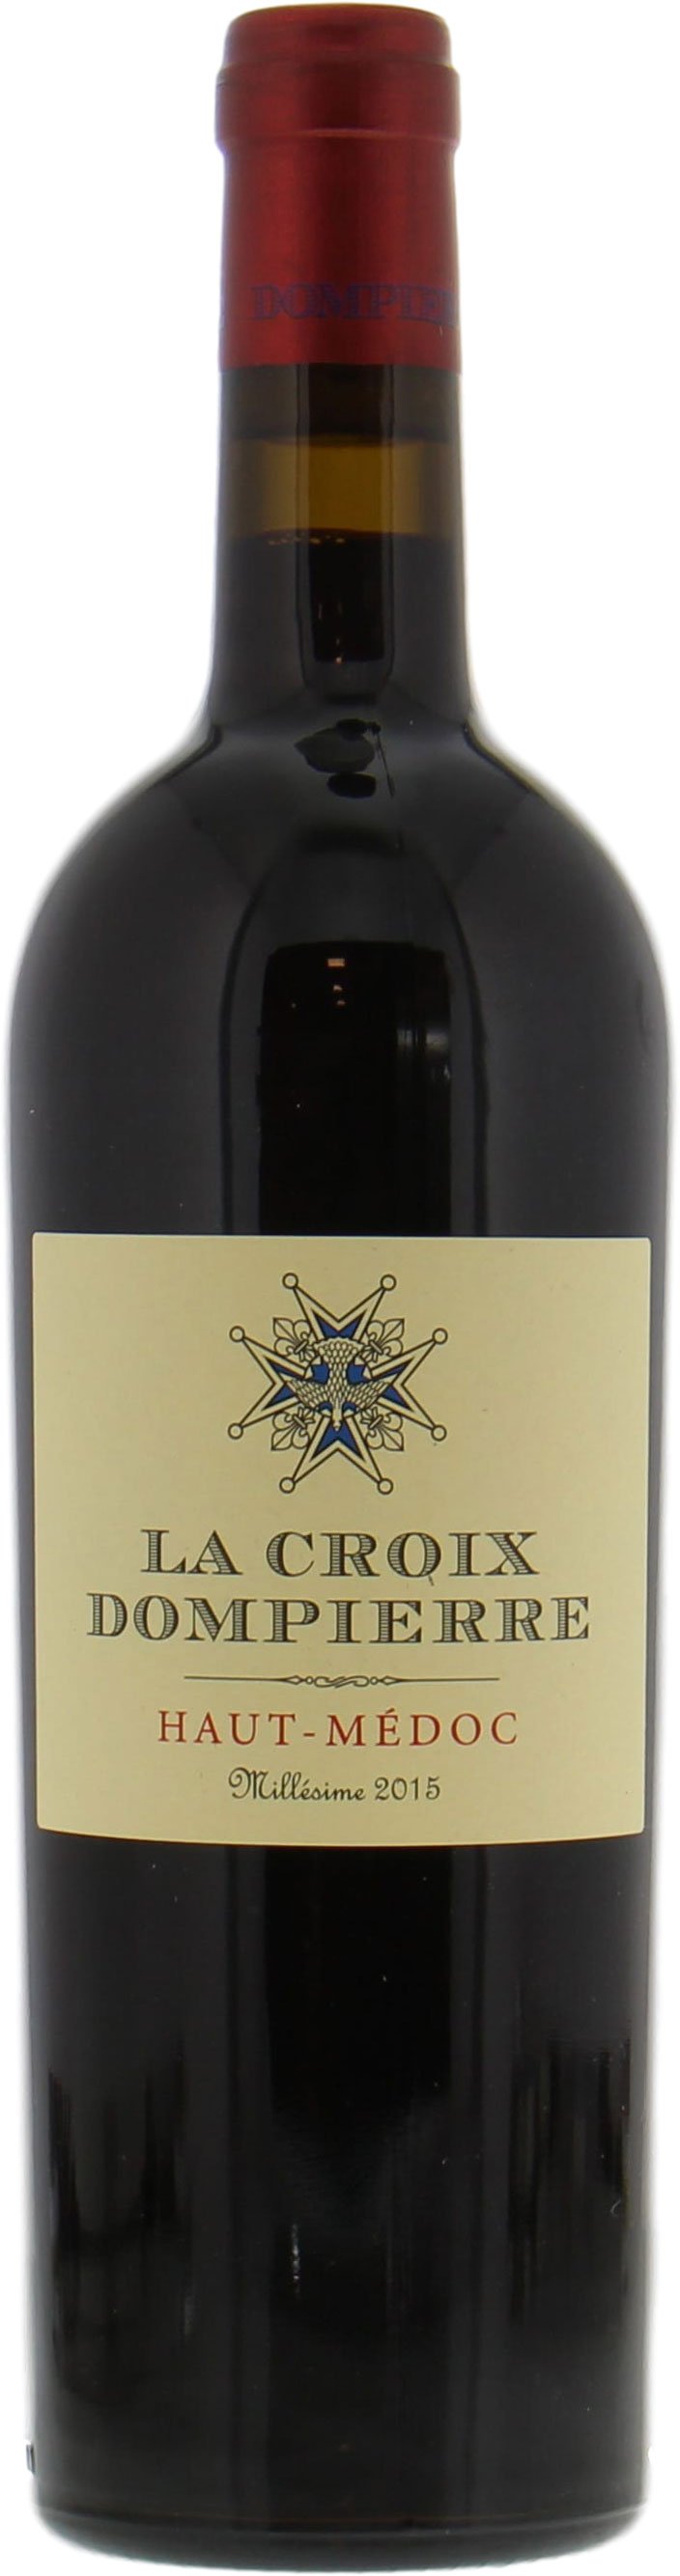 Chateau Dompierre - La Croix Dompierre 2015 Perfect